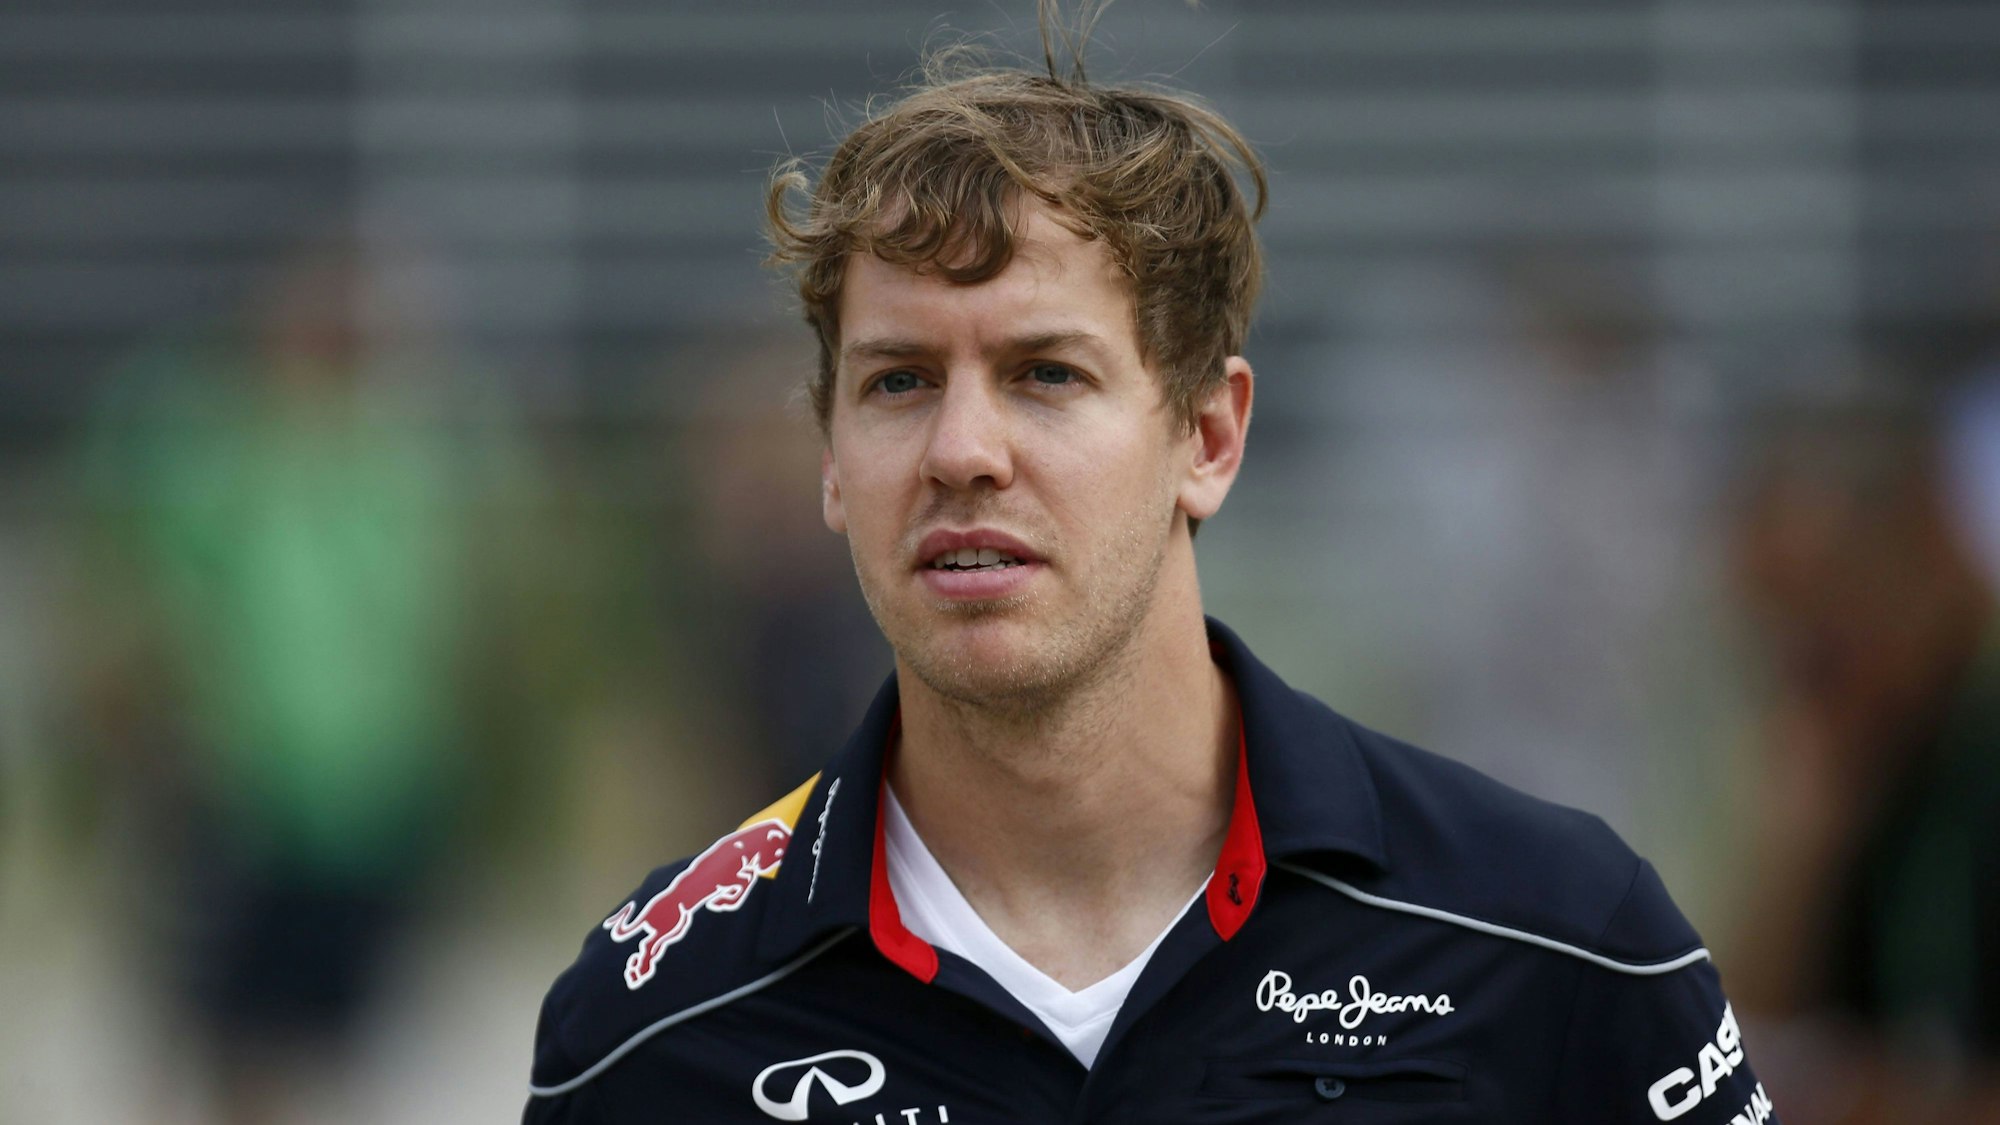 Sebastian Vettel am Rande des Großen Preises von Bahrain 2013.